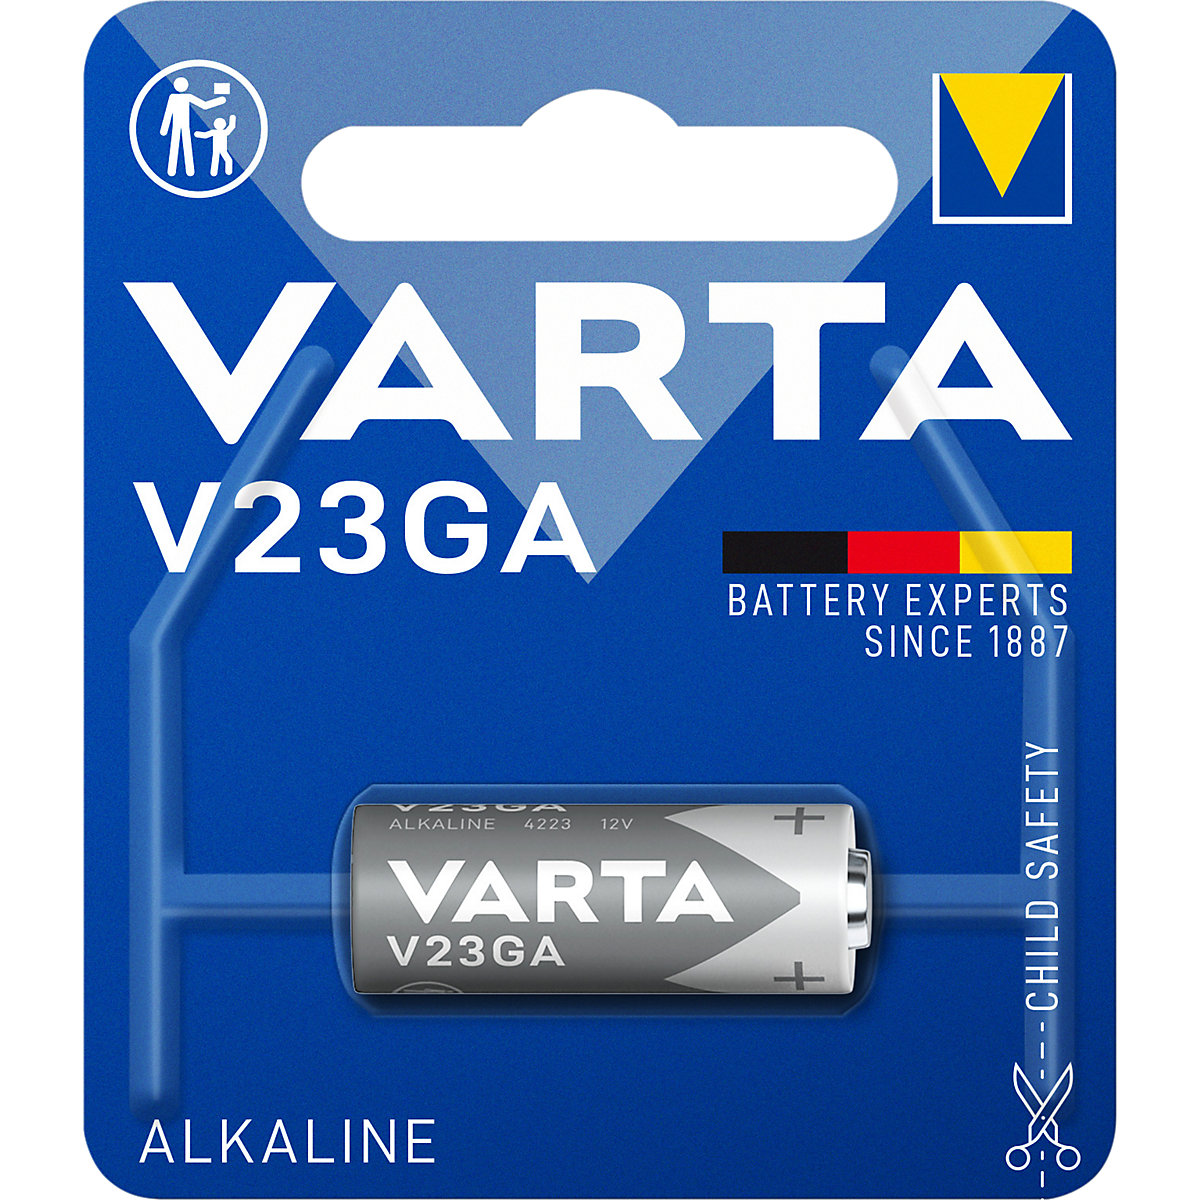 Batería especial ALKALINE – VARTA